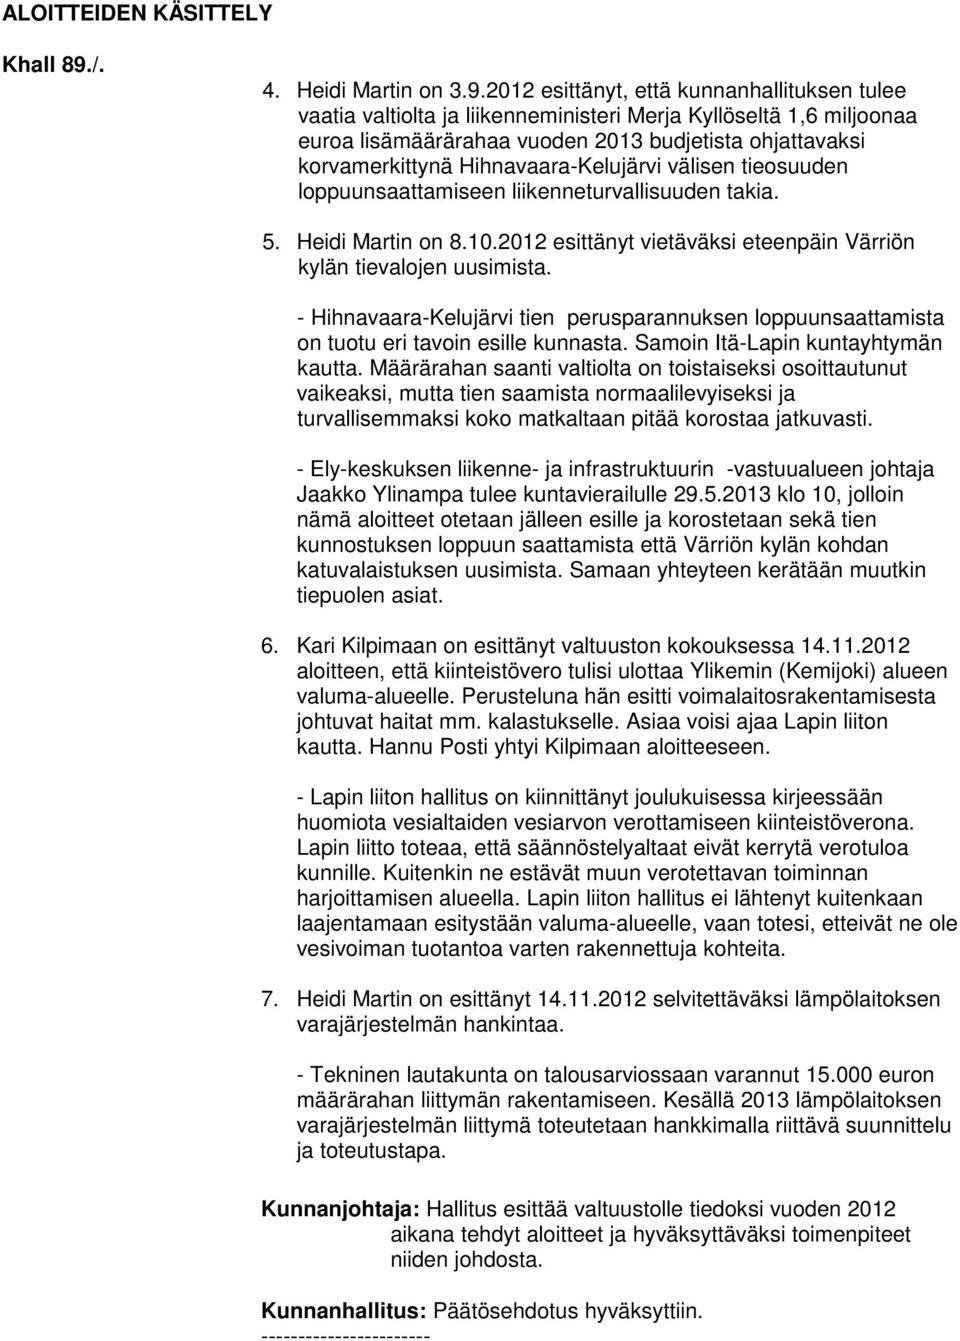 2012 esittänyt, että kunnanhallituksen tulee vaatia valtiolta ja liikenneministeri Merja Kyllöseltä 1,6 miljoonaa euroa lisämäärärahaa vuoden 2013 budjetista ohjattavaksi korvamerkittynä